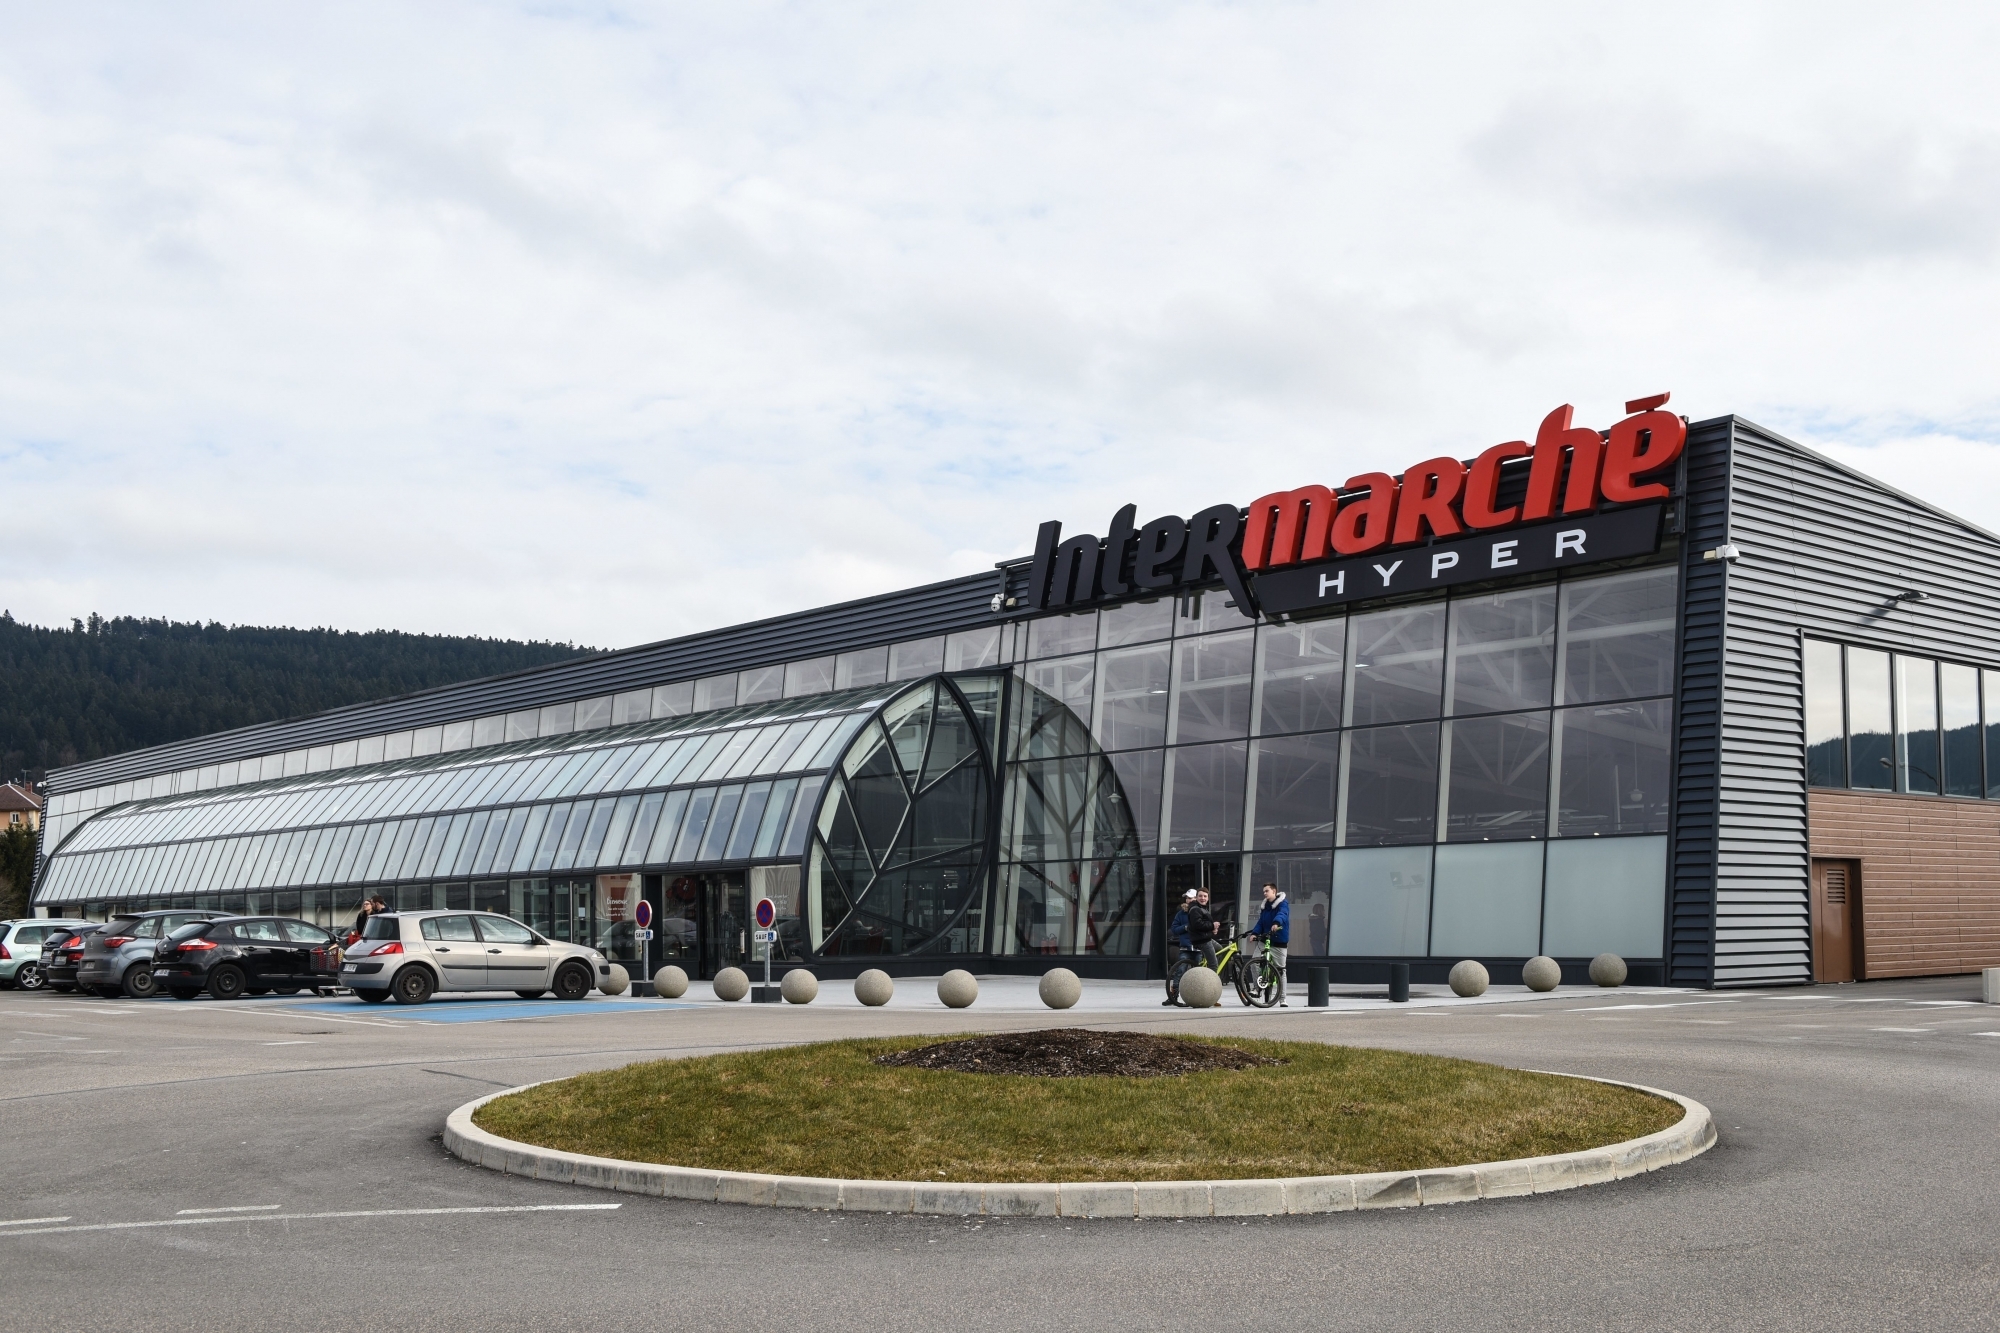 Les Suisses représentent entre 10% et 40% de la clientèle d'Intermarché à Morteau.